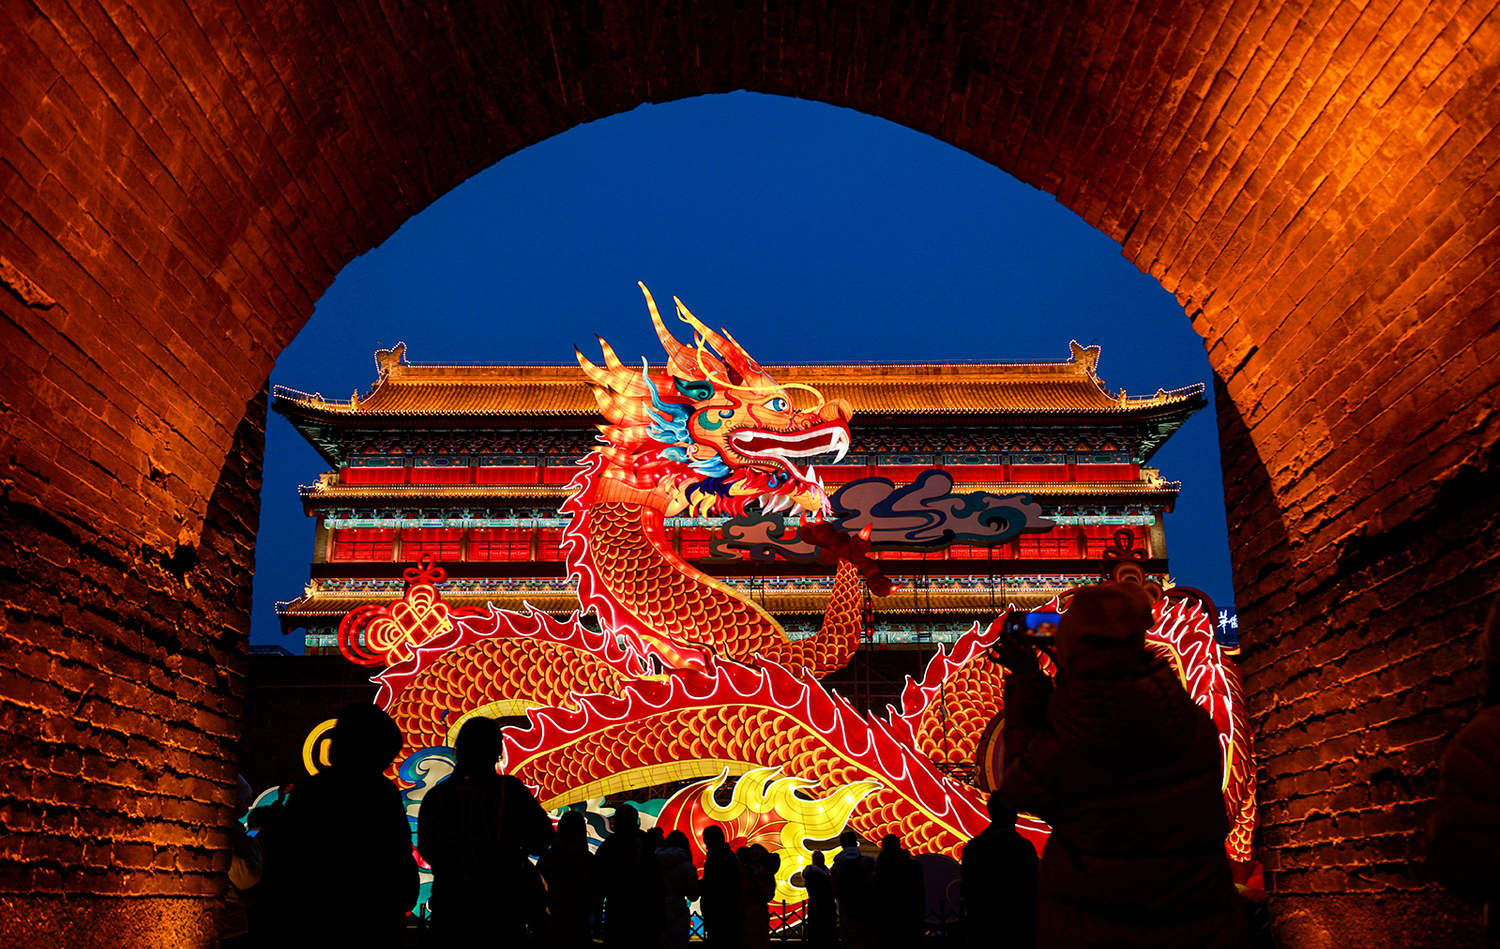 Đèn lồng hình rồng ở Tường thành cổ Tây An, tỉnh Thiểm Tây, Trung Quốc. Tết năm nay  đánh dấu lần đầu tiên sau nhiều năm lễ chào đón năm mới diễn ra trên khắp Trung Quốc đại lục mà không có bất kỳ hạn chế nào về COVID-19.